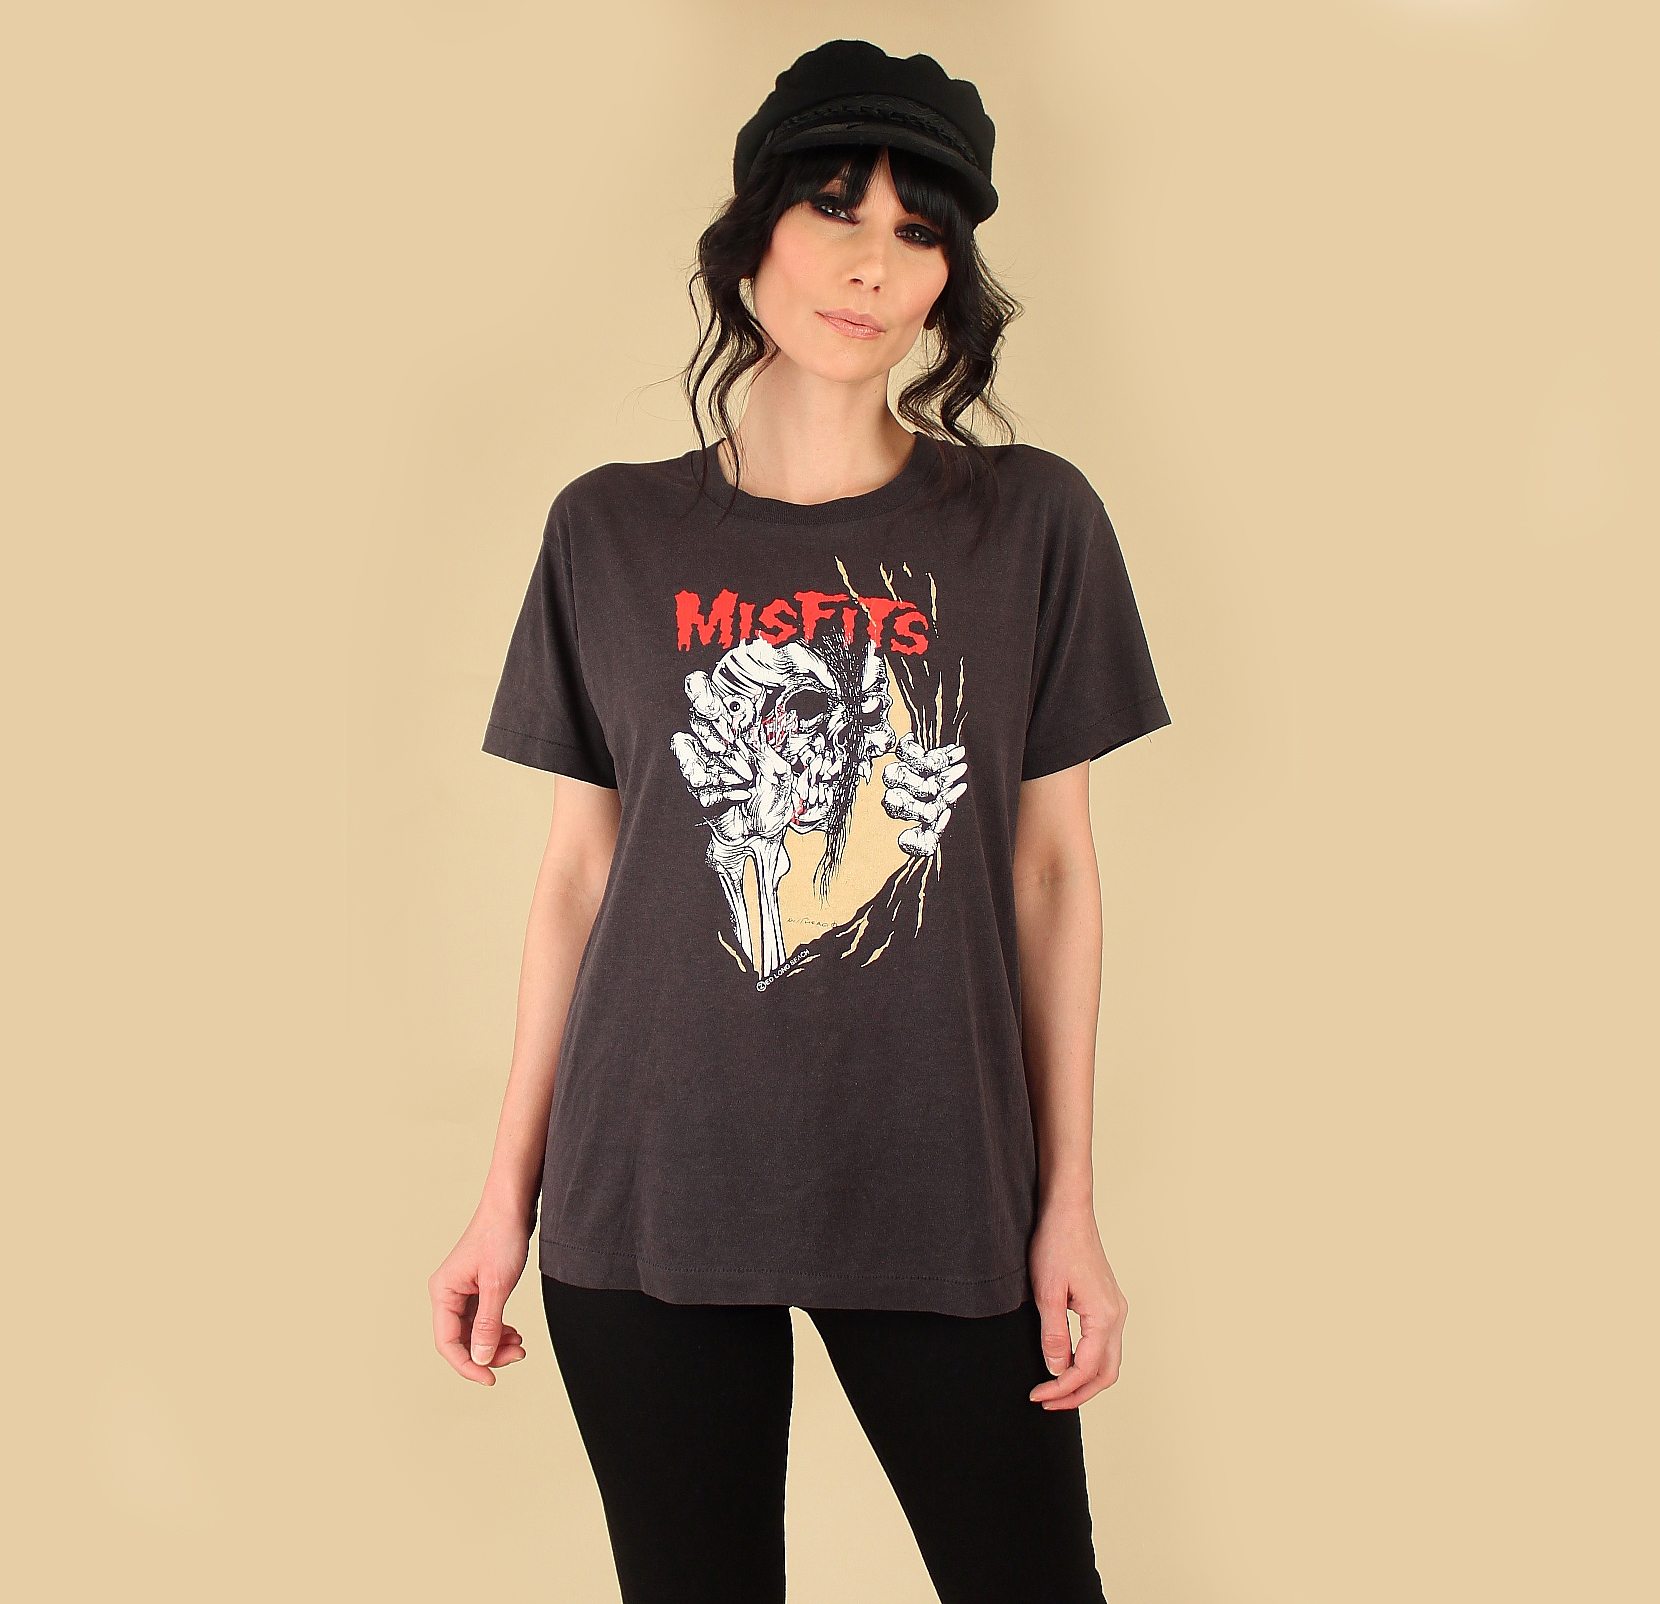 The Misfits Vintage T-Shirt // 1980's ThreadBare Pushead